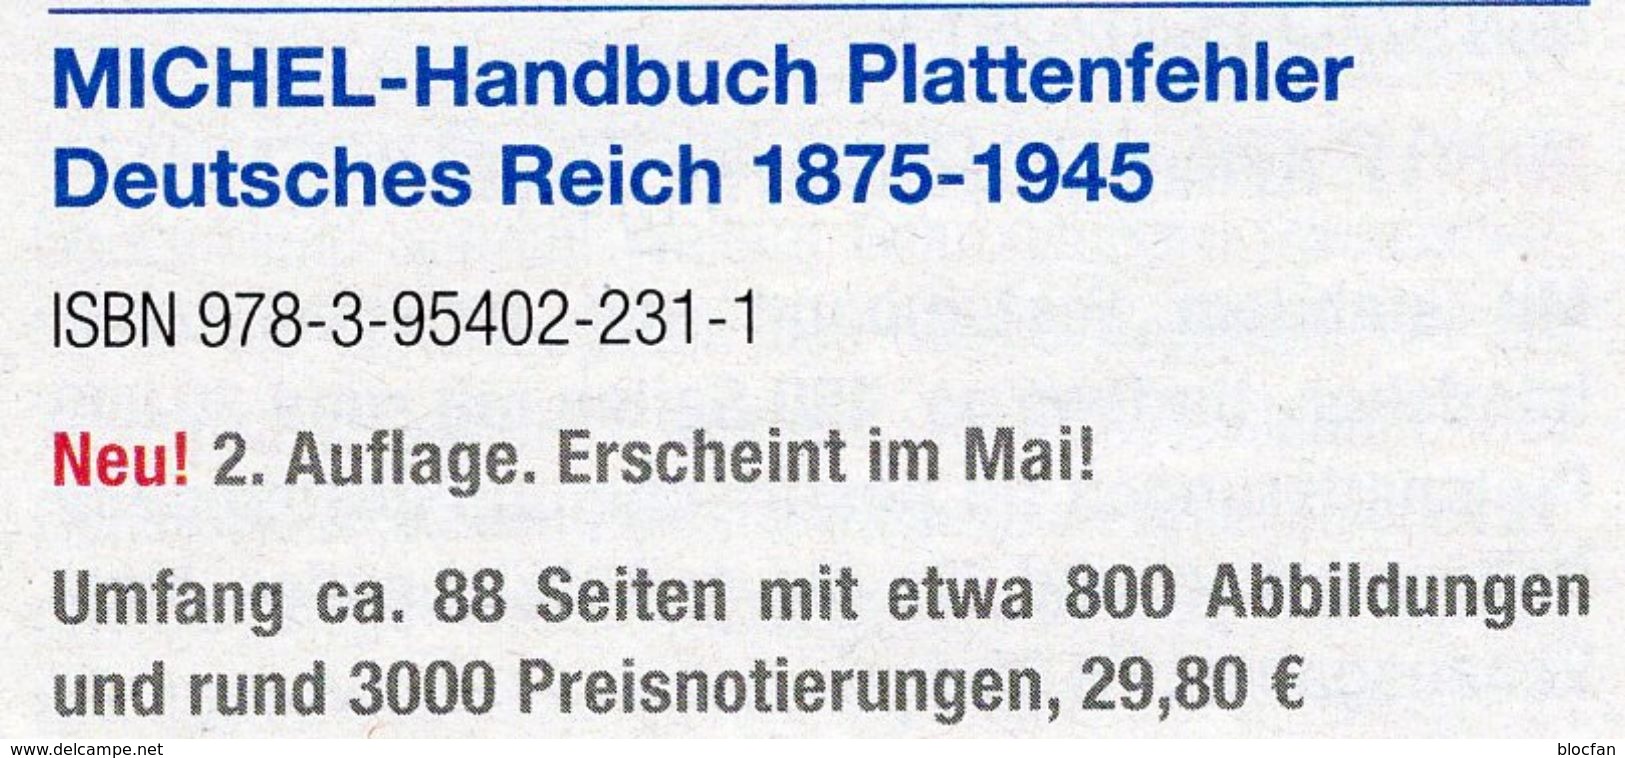 Deutsche Reich 1875-1945 MlCHEL Plattenfehler 2018 New 30€ D Kaiserreich DR 3.Reich Error Special Catalogue Germany - Filatelie